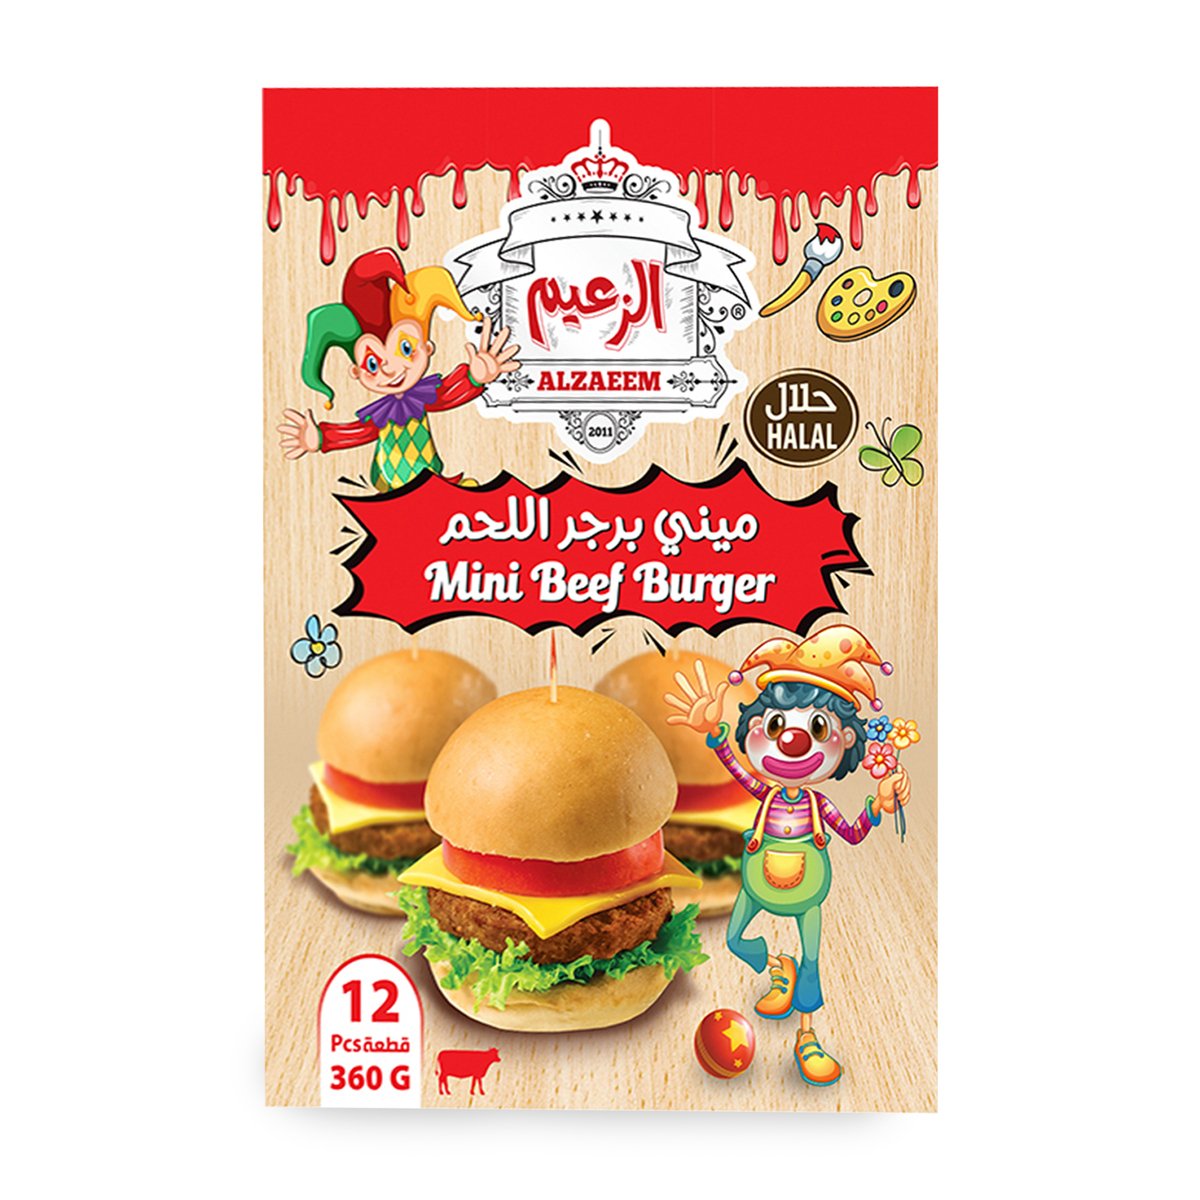 Al Zaeem Mini Beef Burger 12pcs 360g